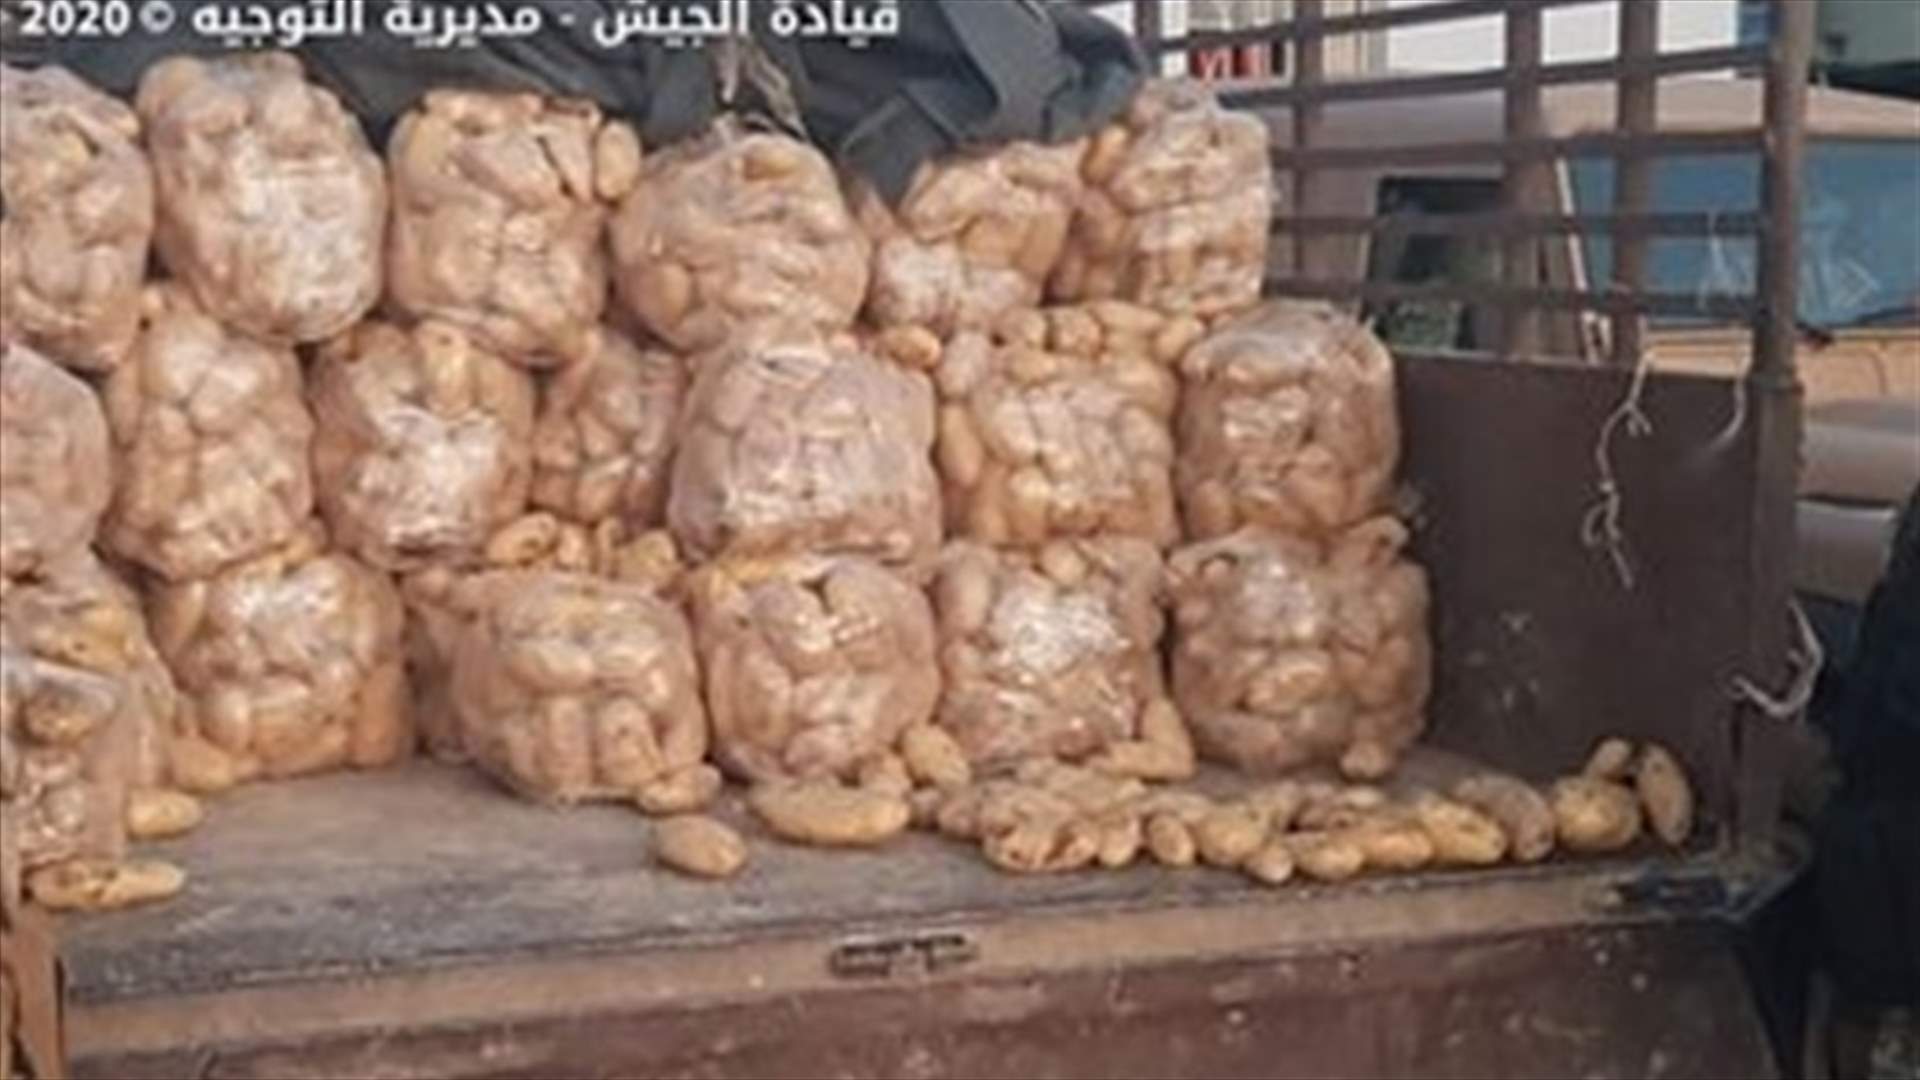 الجيش: ضبط نحو طن ونصف الطن من البطاطا المعدّة للتهريب (صوَر)